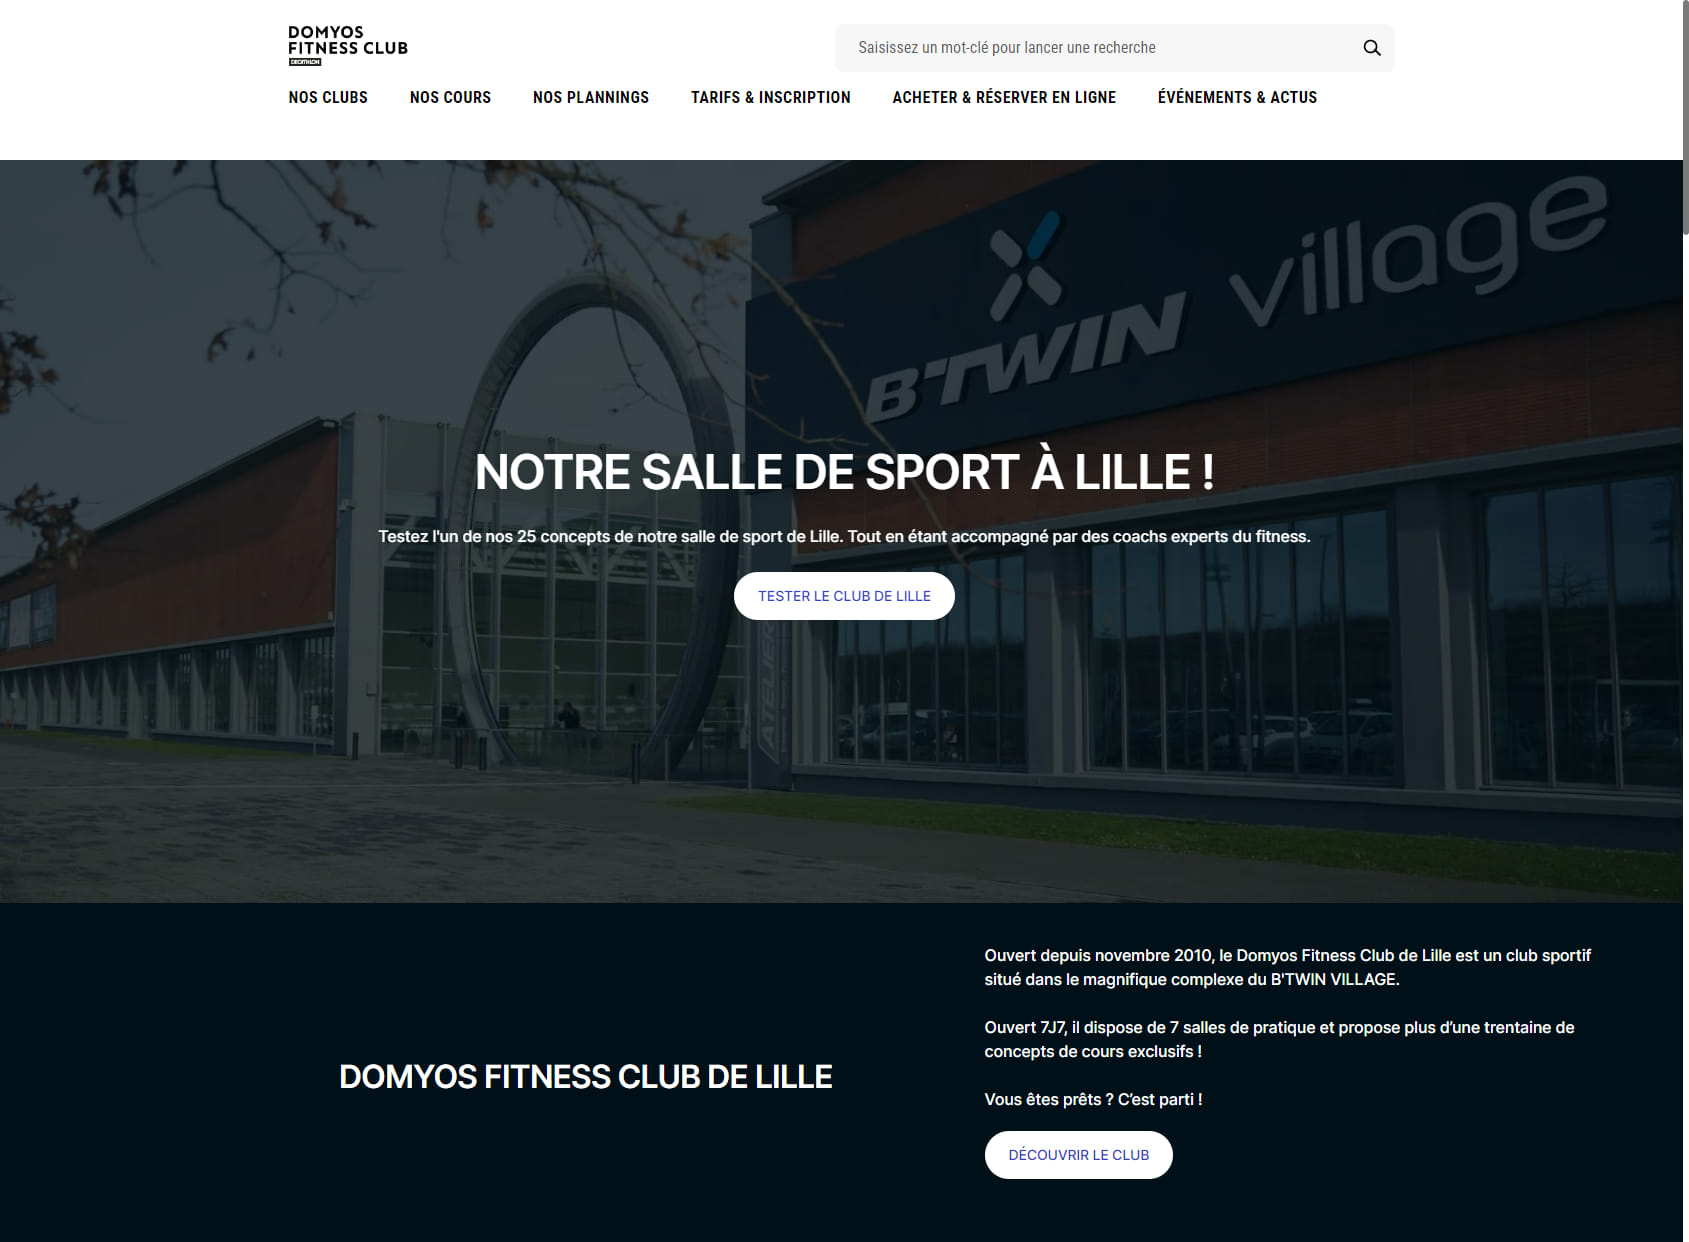 Domyos Club Lille